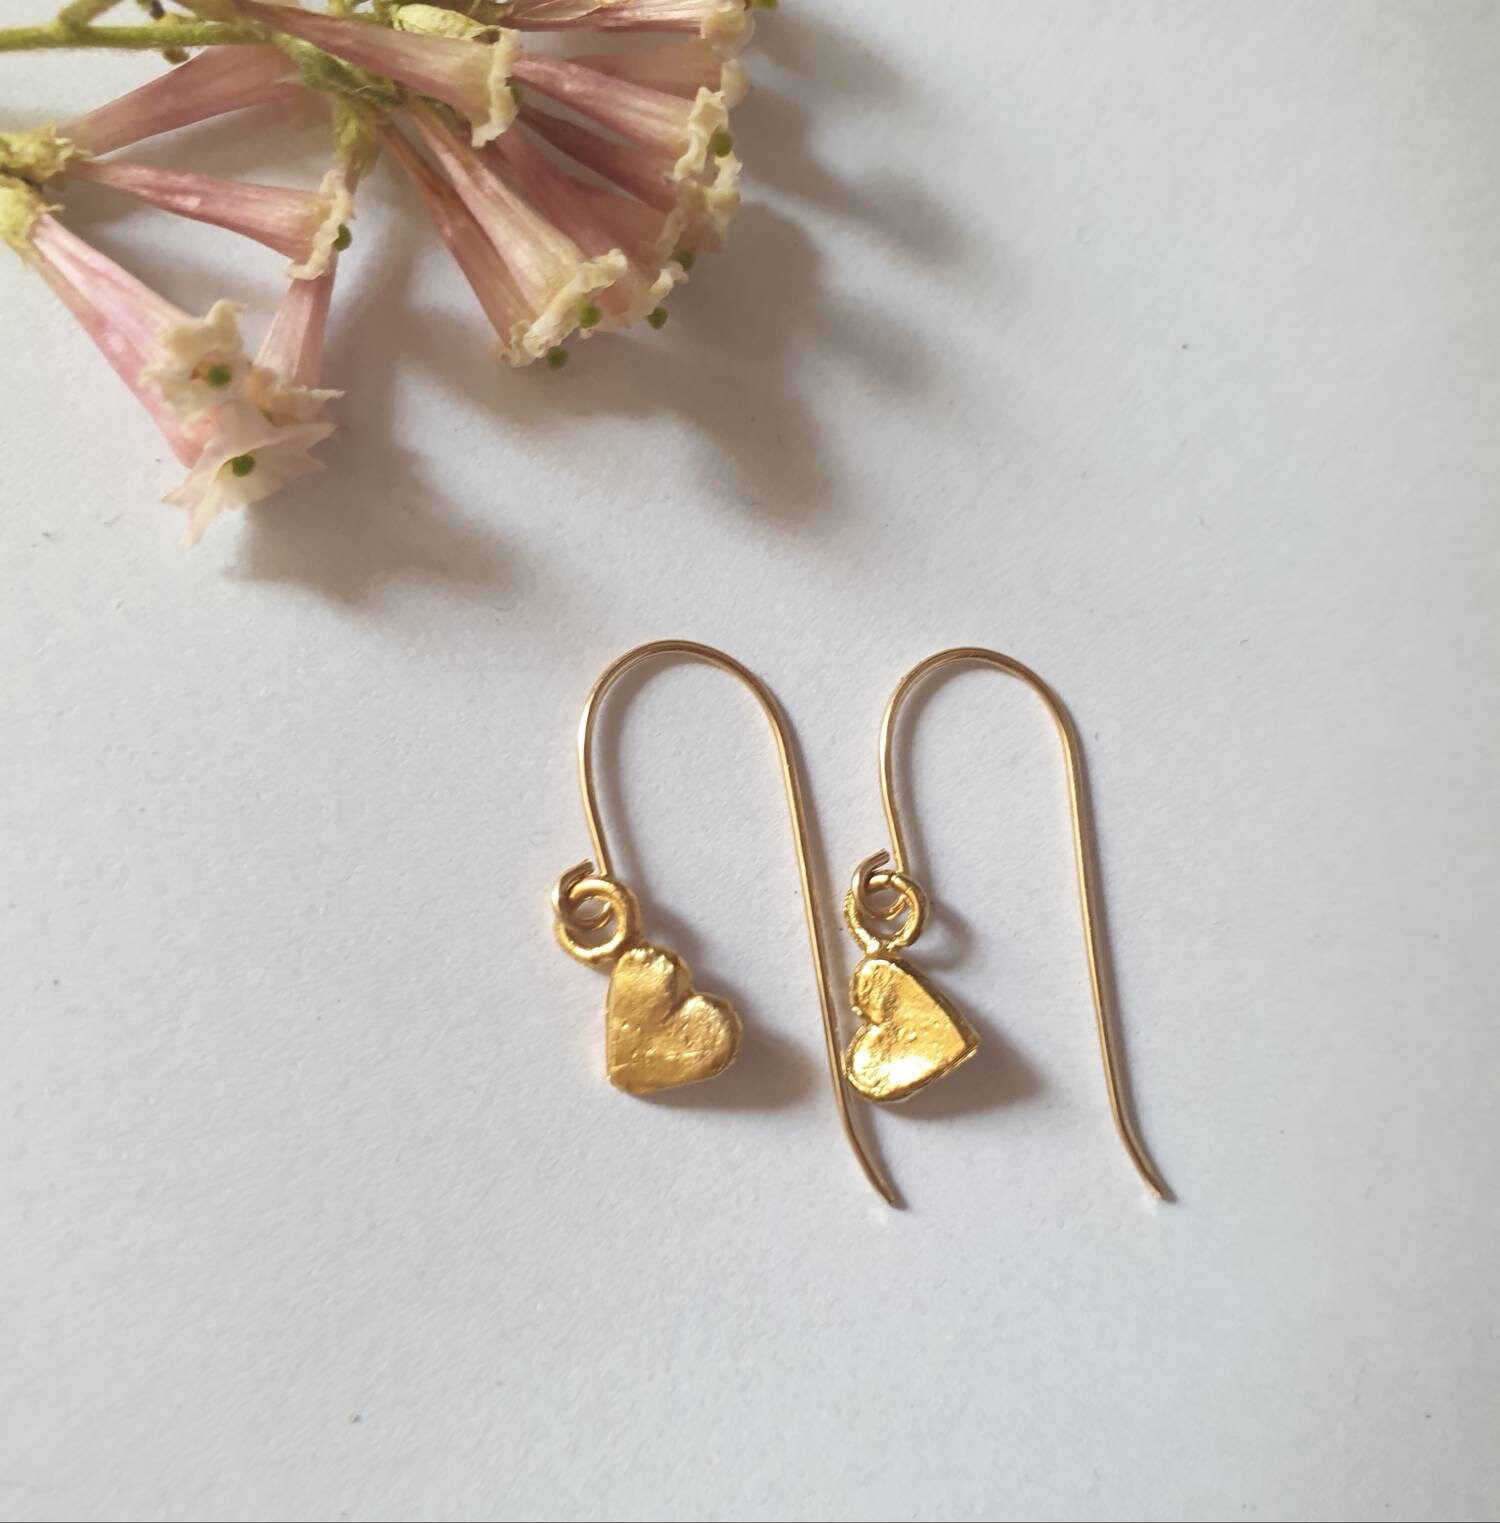 Solid gold earrings 14k gold heart earrings dangle heart | Etsy